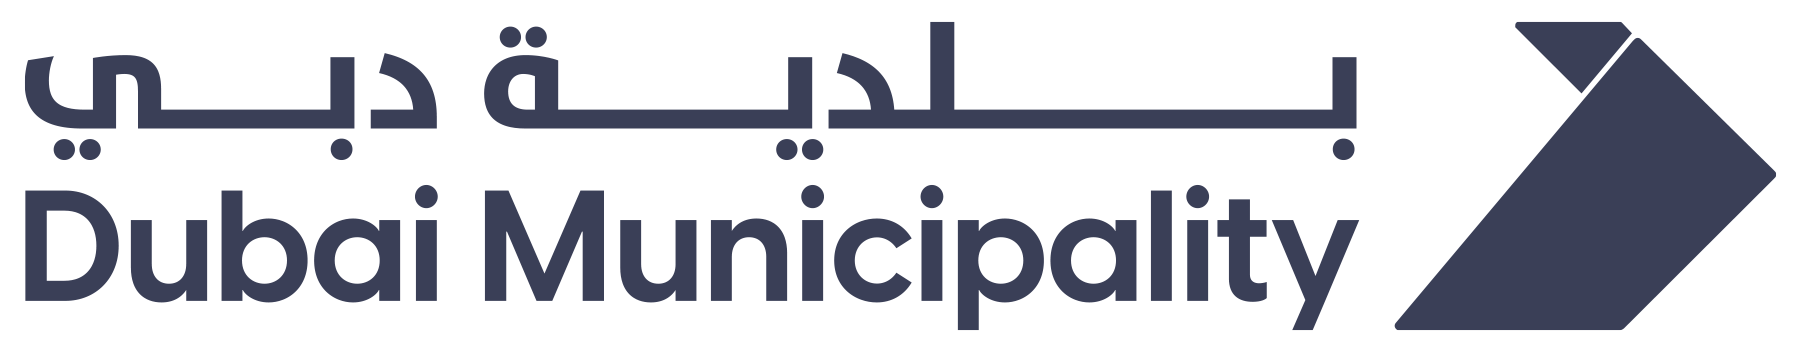 Dubai Municipality About logo